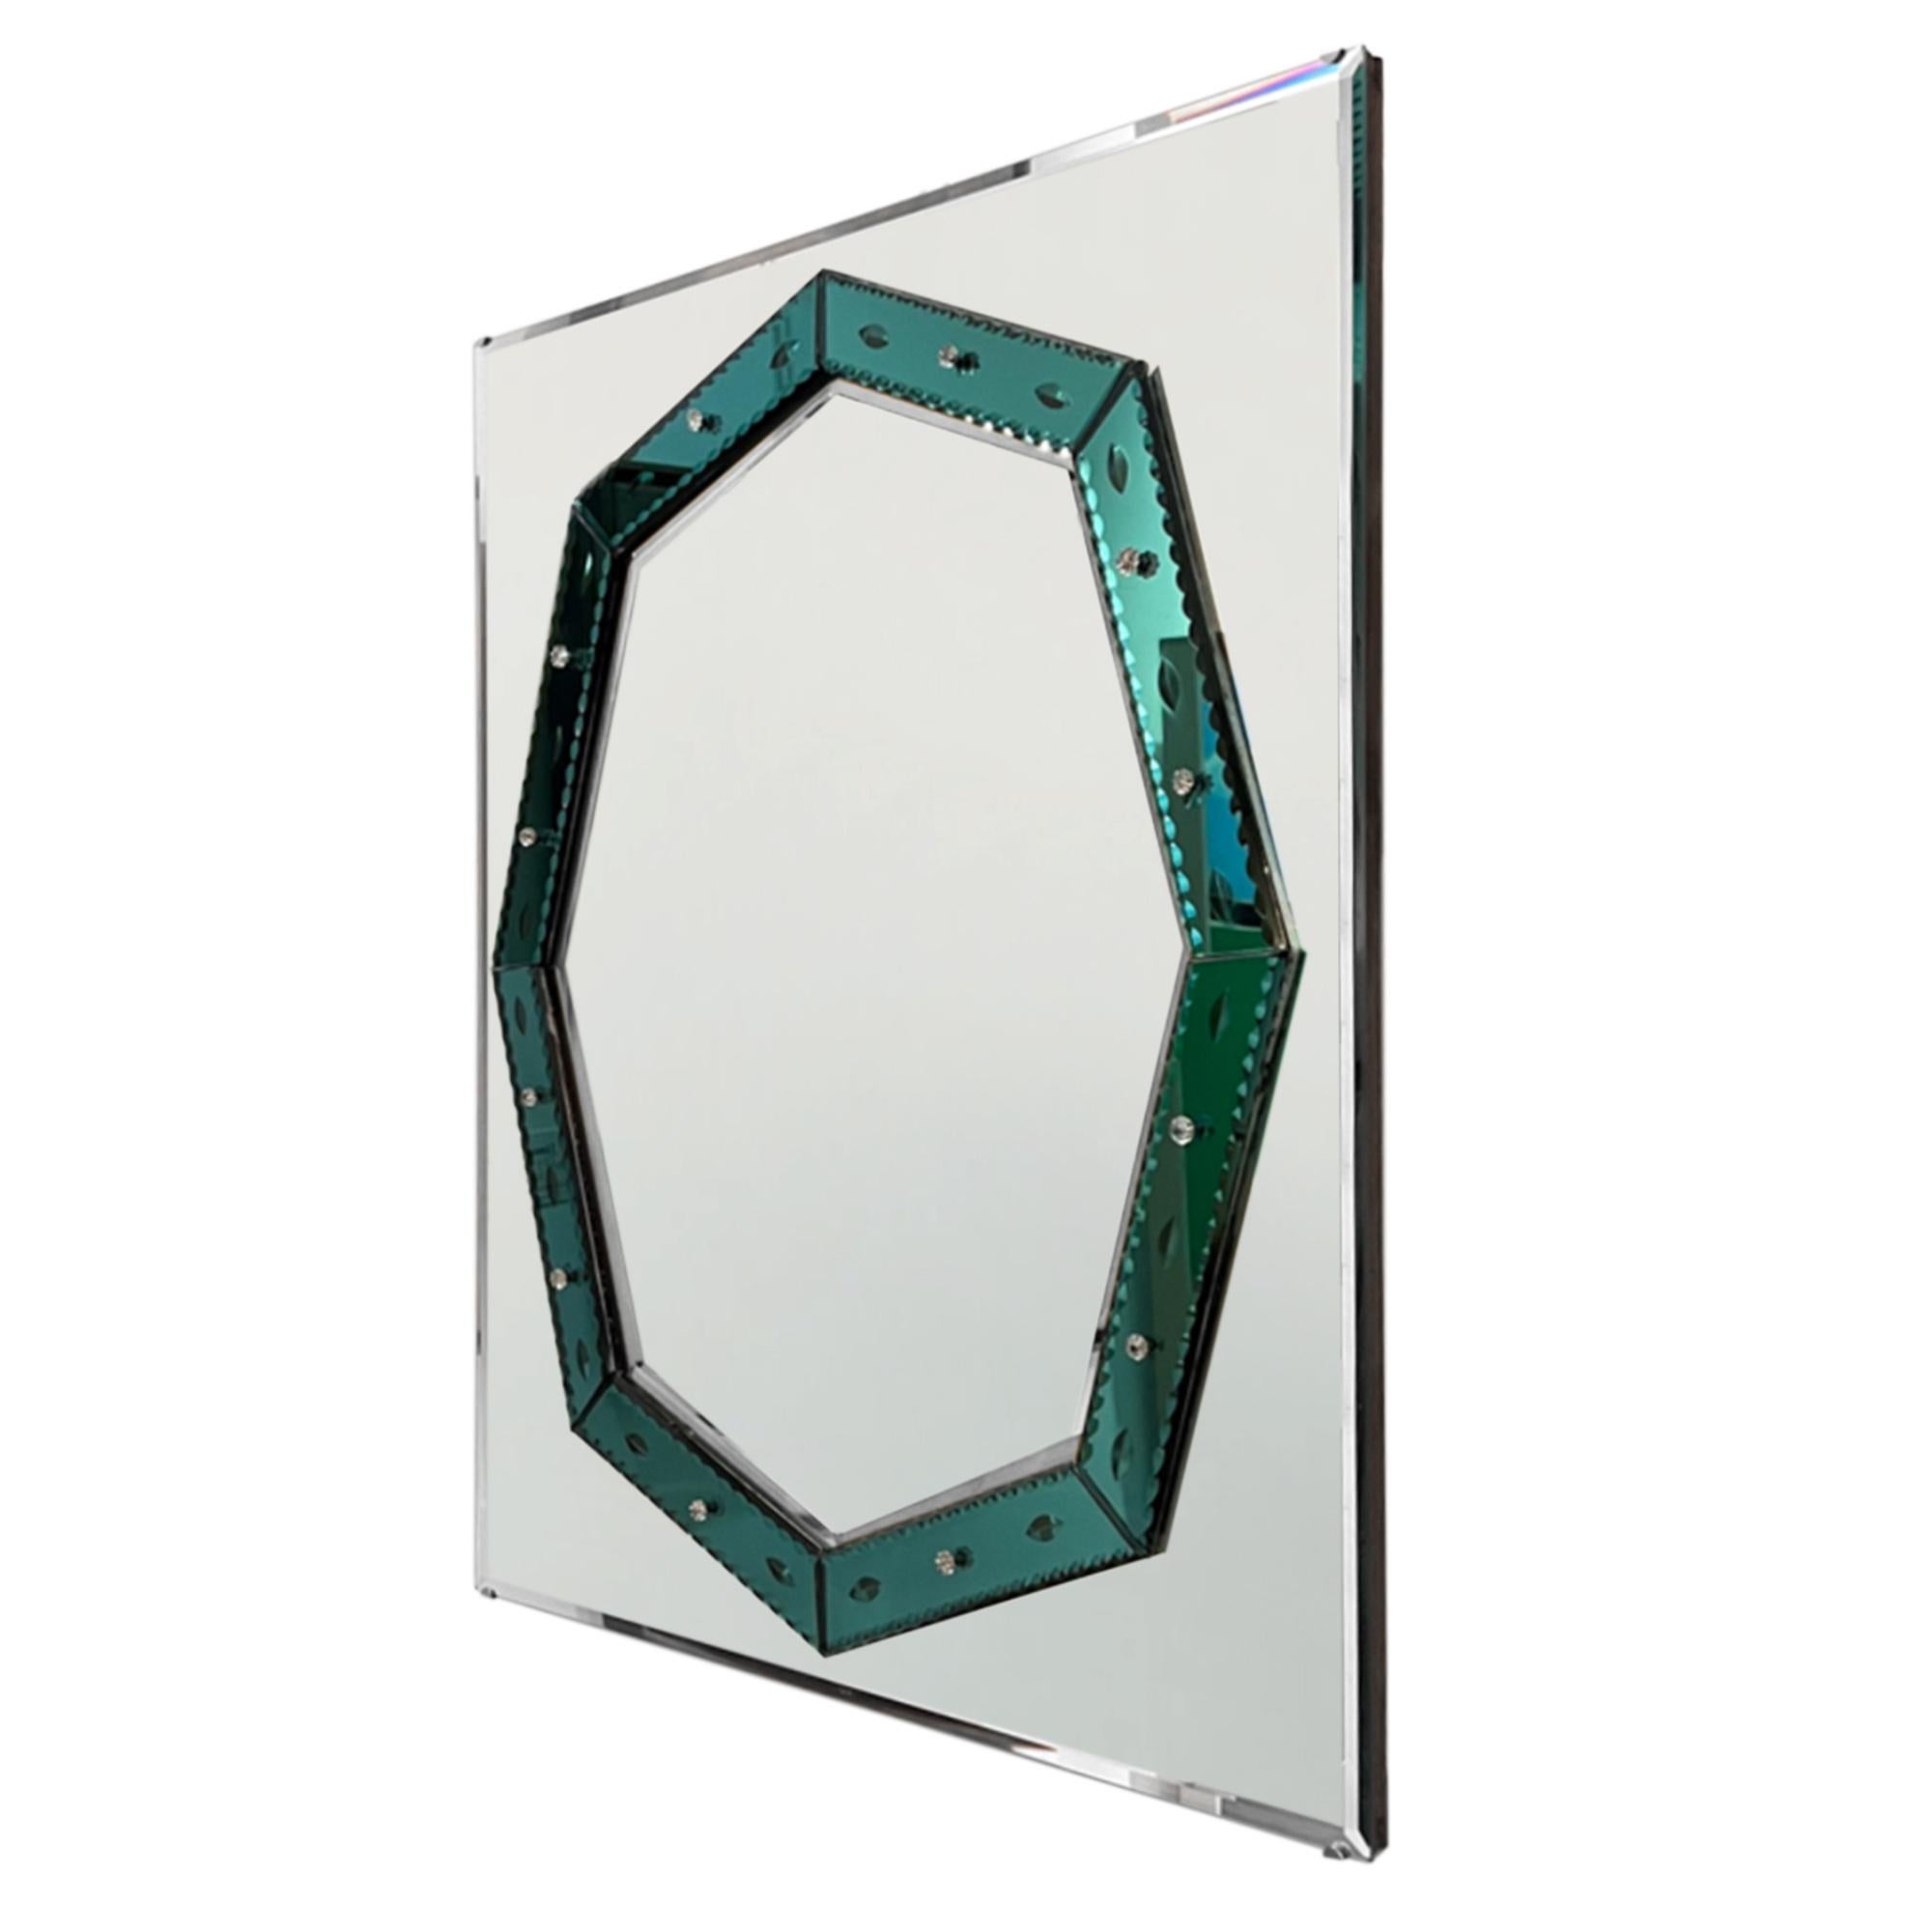 Dieser schöne Wandspiegel passt in jeden Raum und besticht durch seine grünen Art-Déco-Details.

Der Rand des Spiegels ist abgeschrägt und die grüne Dekoration ist mit Blumenstiften aus Klarglas befestigt. Das Glas ist 5 cm breit und hat eine